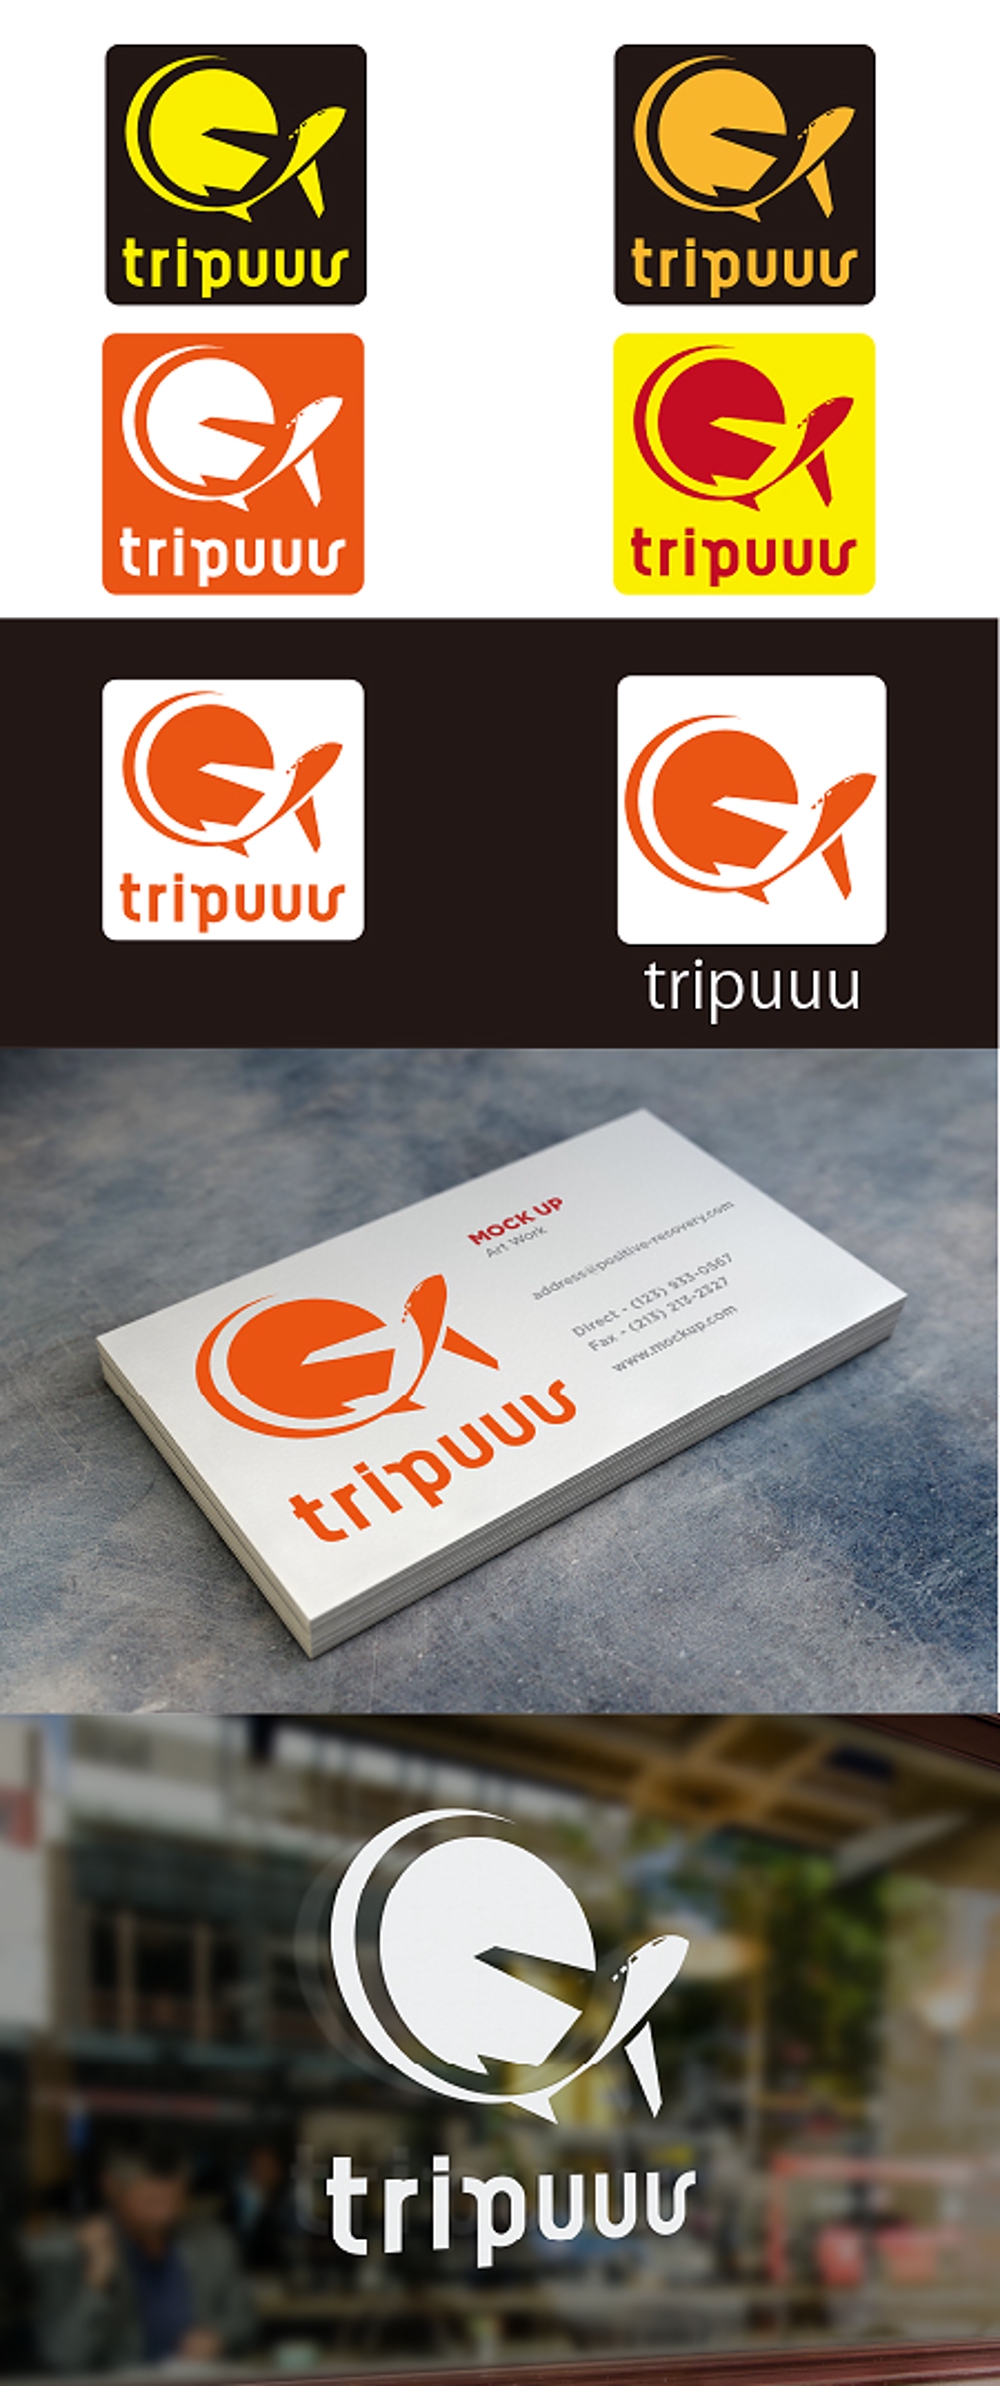 海外旅行キュレーションサイト「トリップー」のロゴ